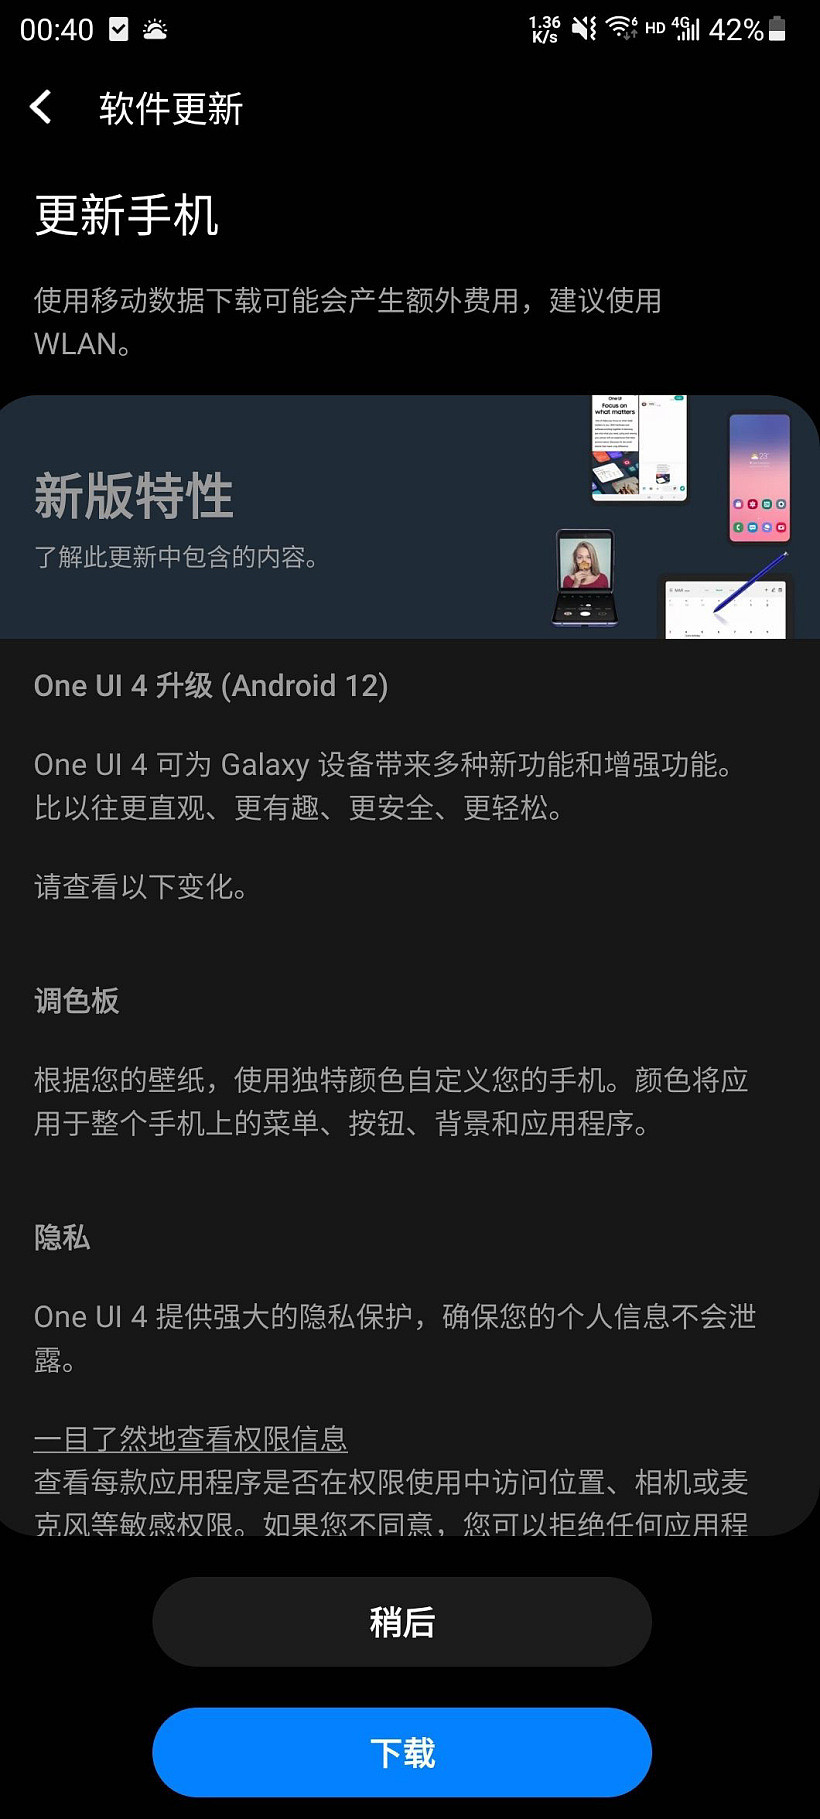 吃上安卓 12，三星 S20 FE 国行手机开始推送 One UI 4.0 系统更新 - 2